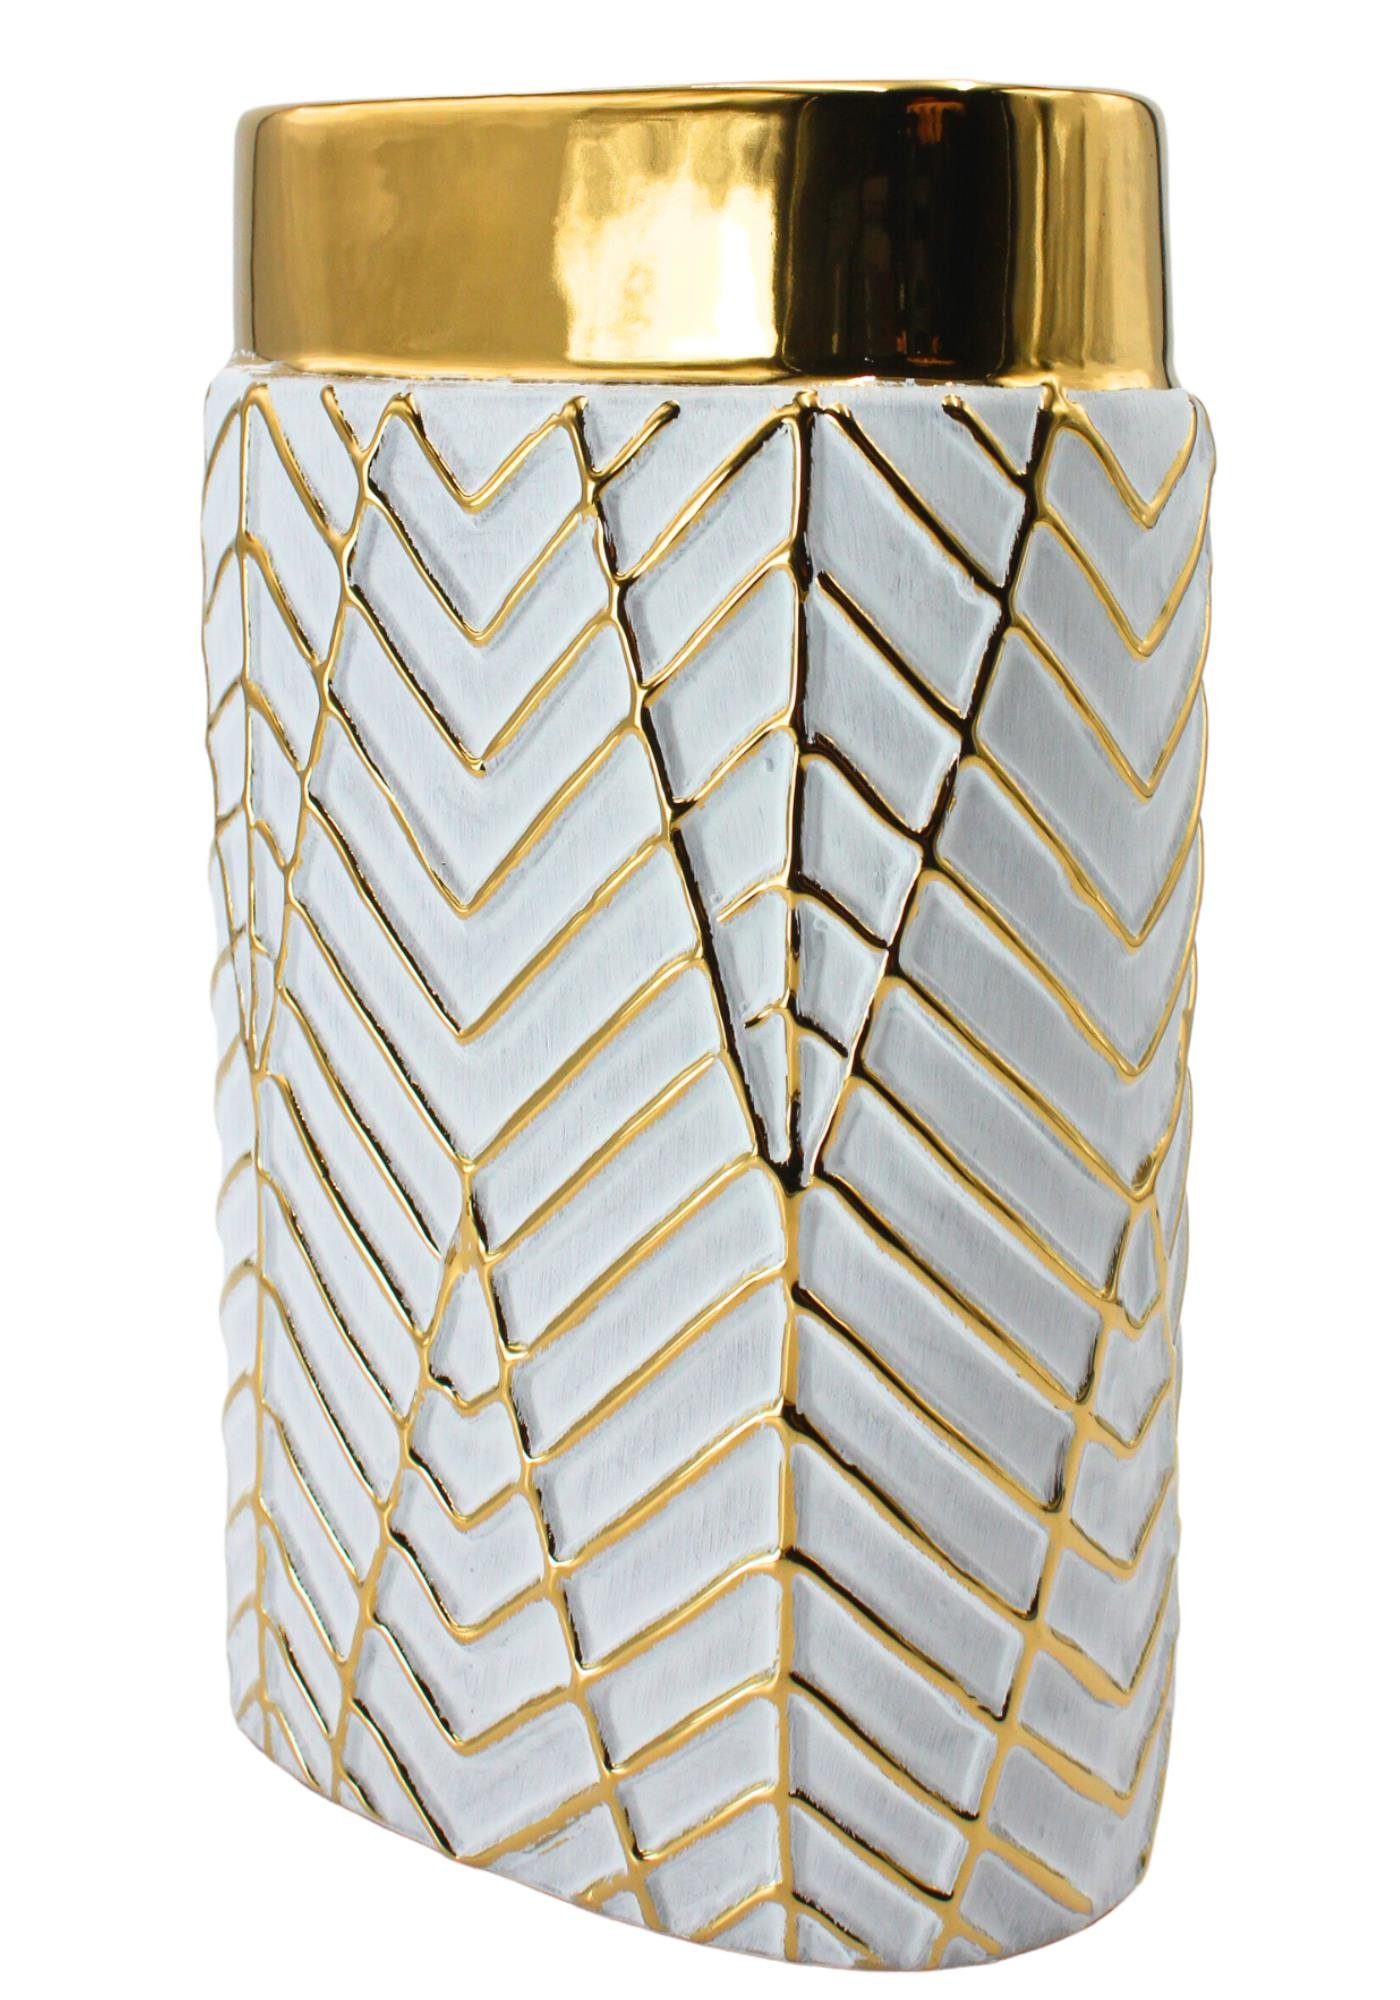 Dekohelden24 Dekovase Edle hochwertige Keramik Vase in weiß und gold, verschieden Muster (1 Vase, 1 St)